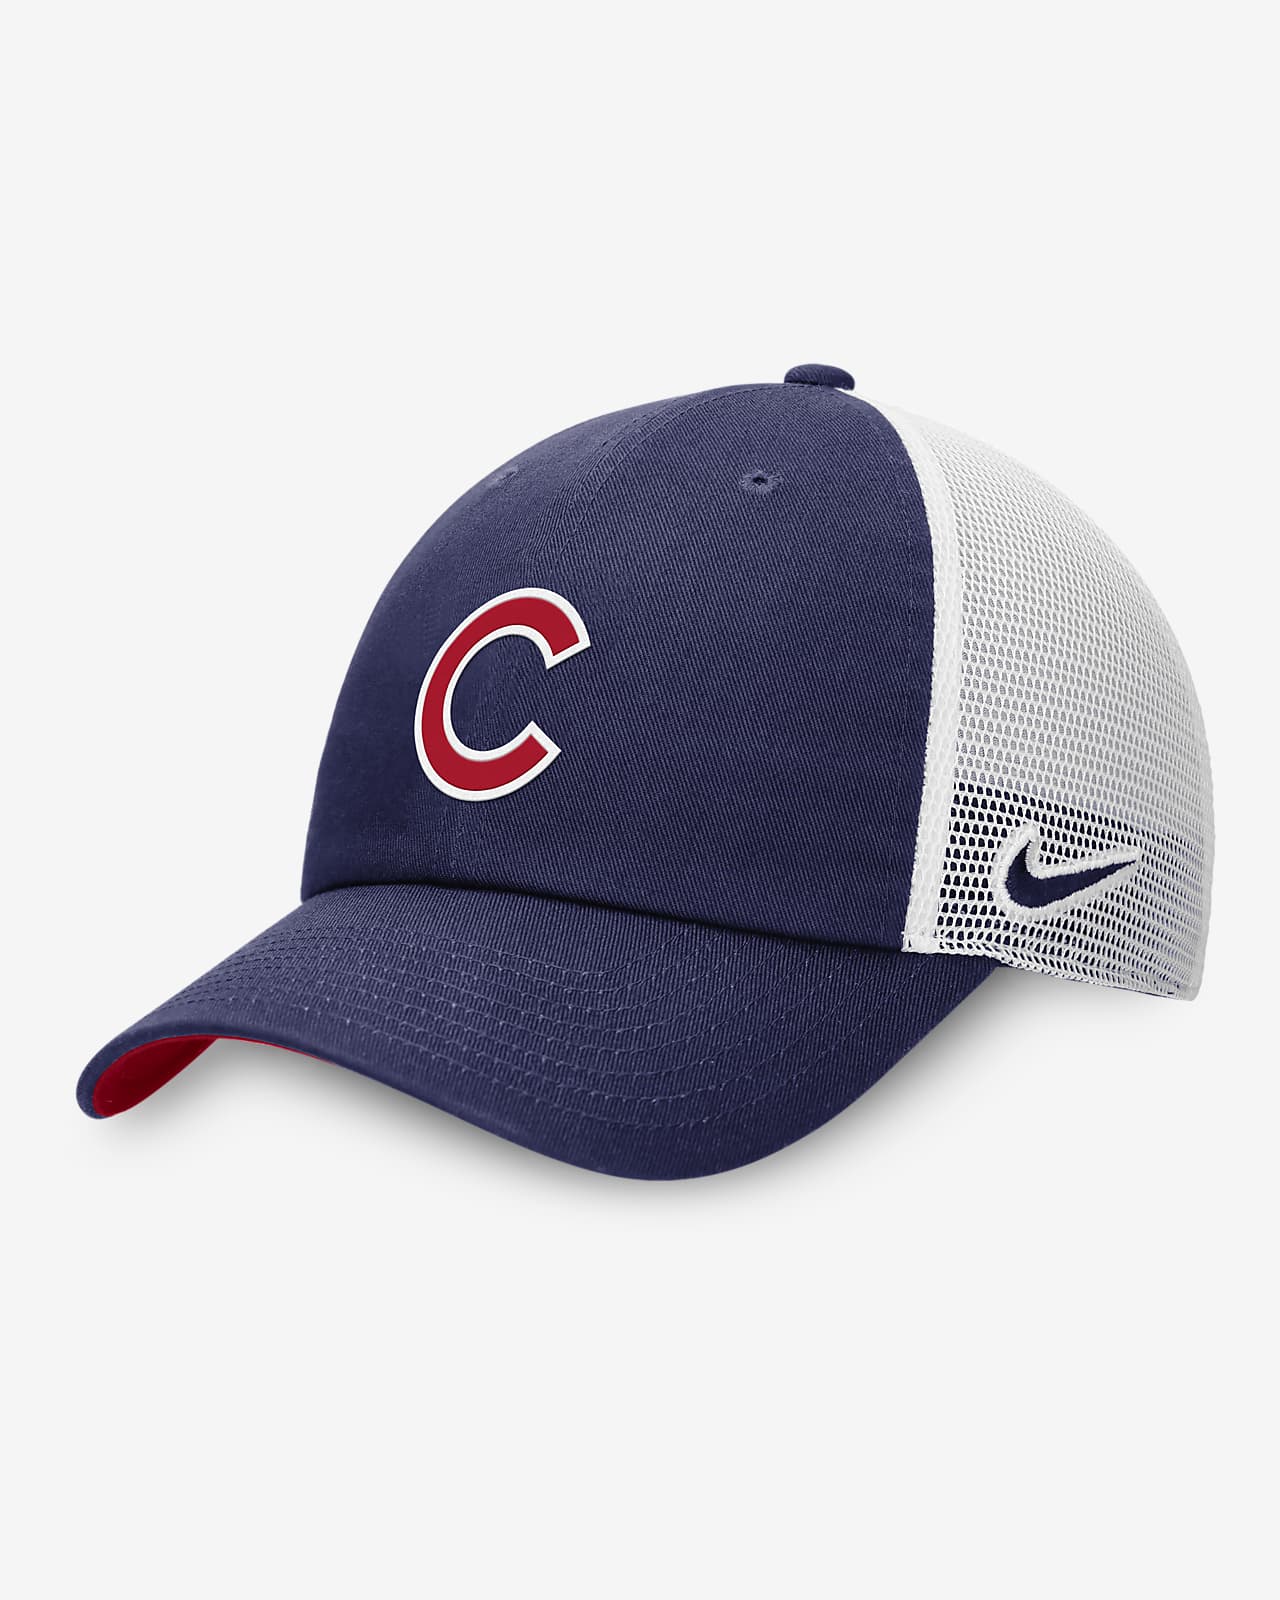 Chicago Cubs Heritage86 Men's Nike MLB Trucker Adjustable Hat